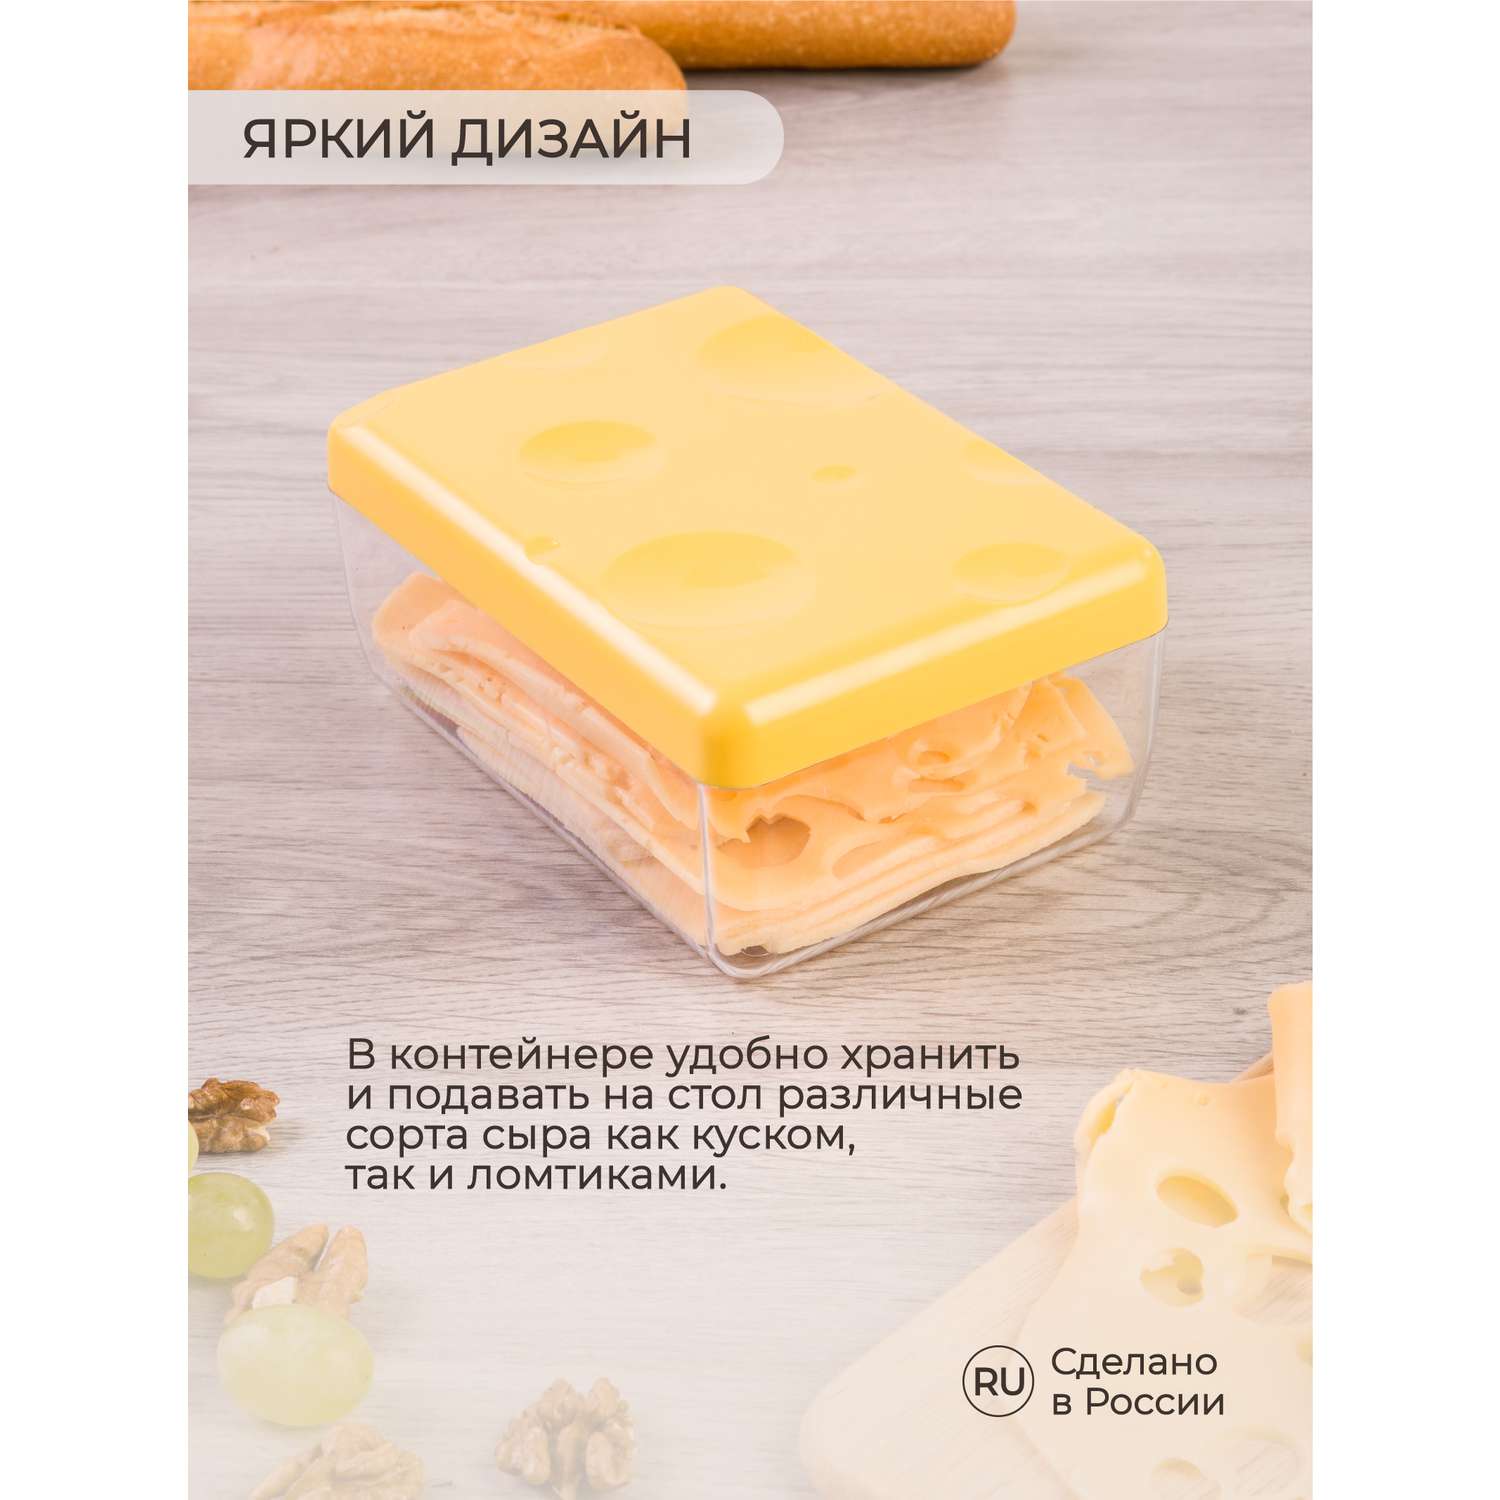 Контейнер для сыра Phibo желтый - фото 5